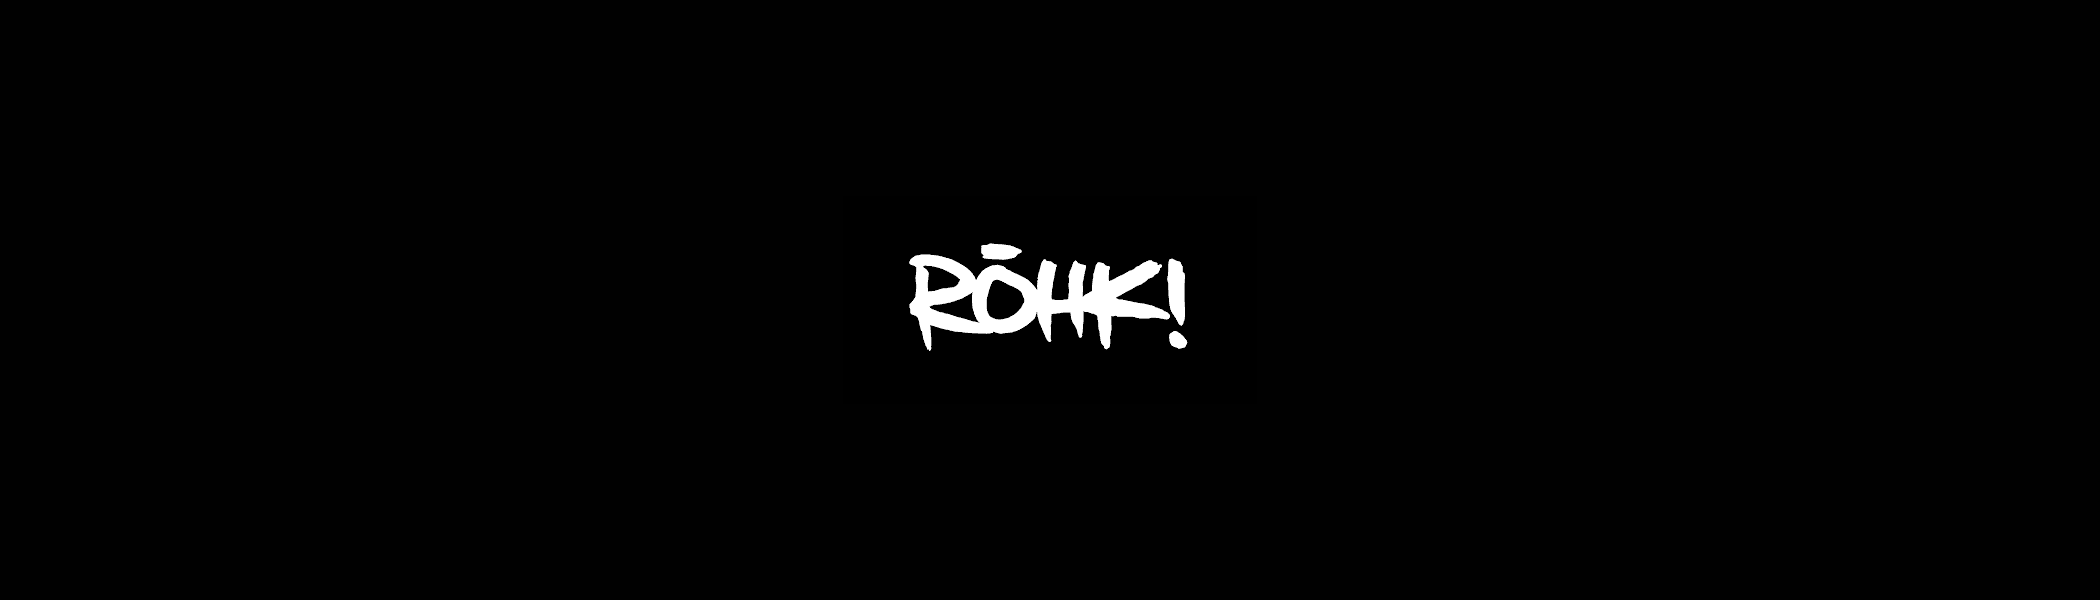 ROHKI_Summoner banner